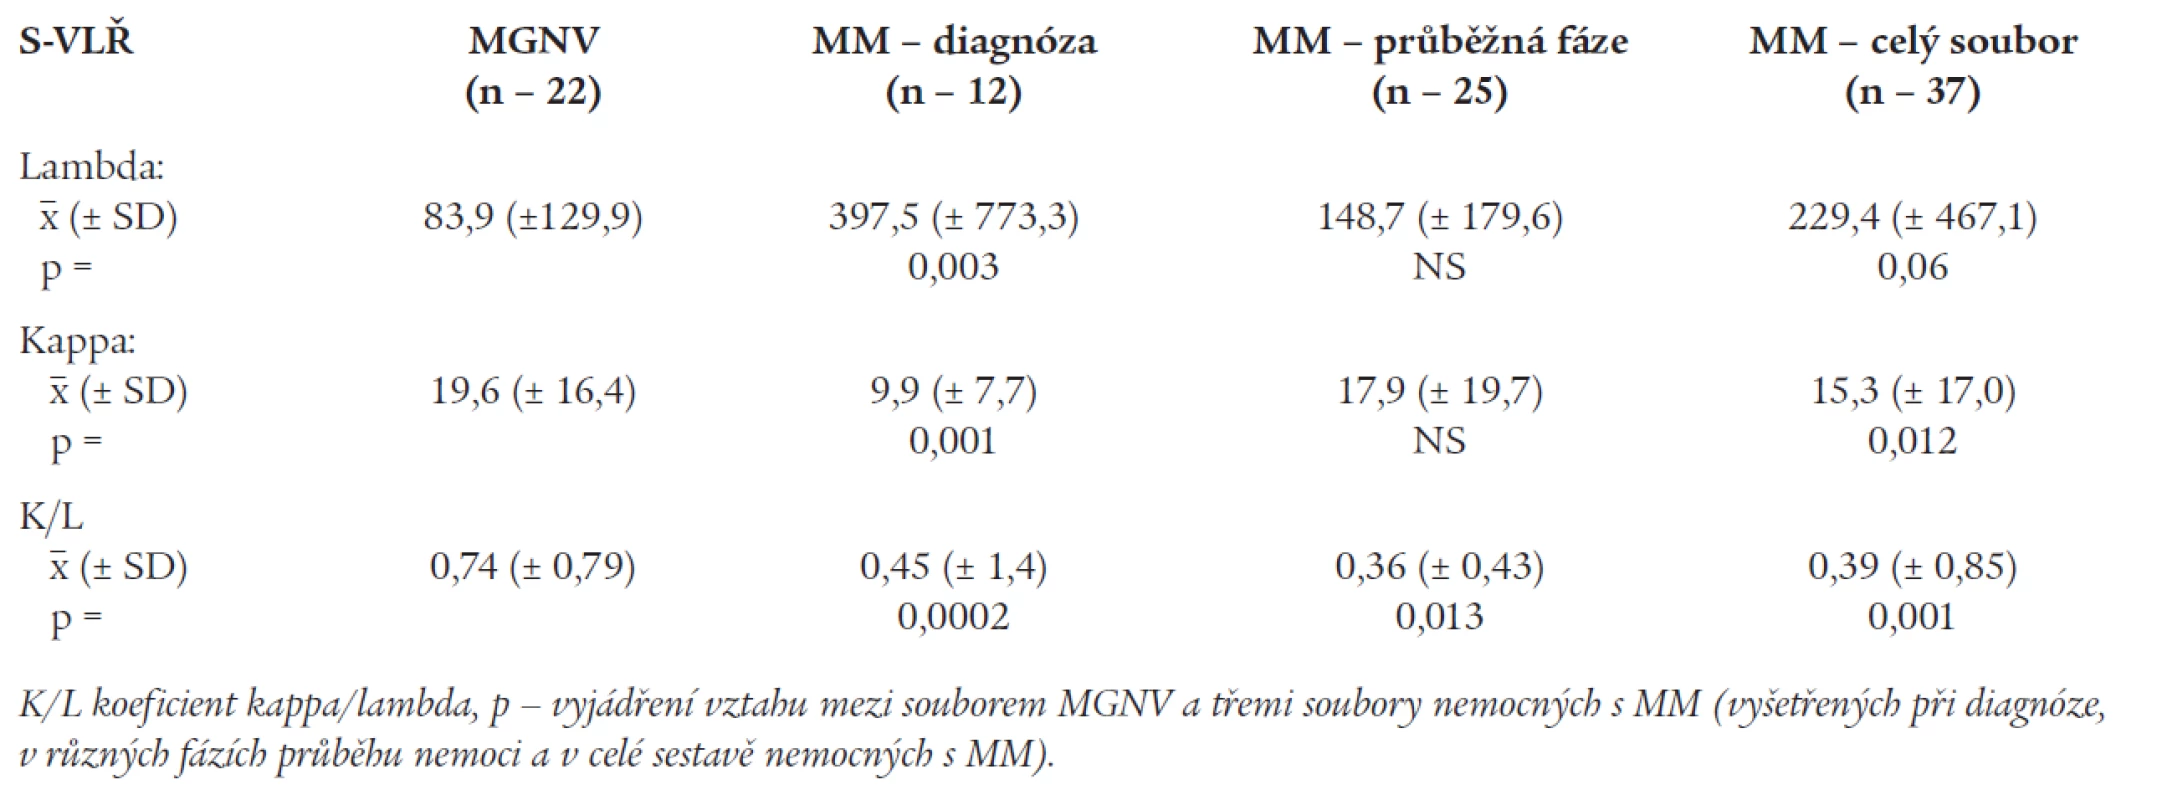 Srovnání hladin volných lehkých řetězců a jejich poměru K/L v séru nemocných s mnohočetným myelomem a monoklonální gamapatií nejistého významu v sestavě λ (Mann-Whitney U test, p &lt; 0.05)